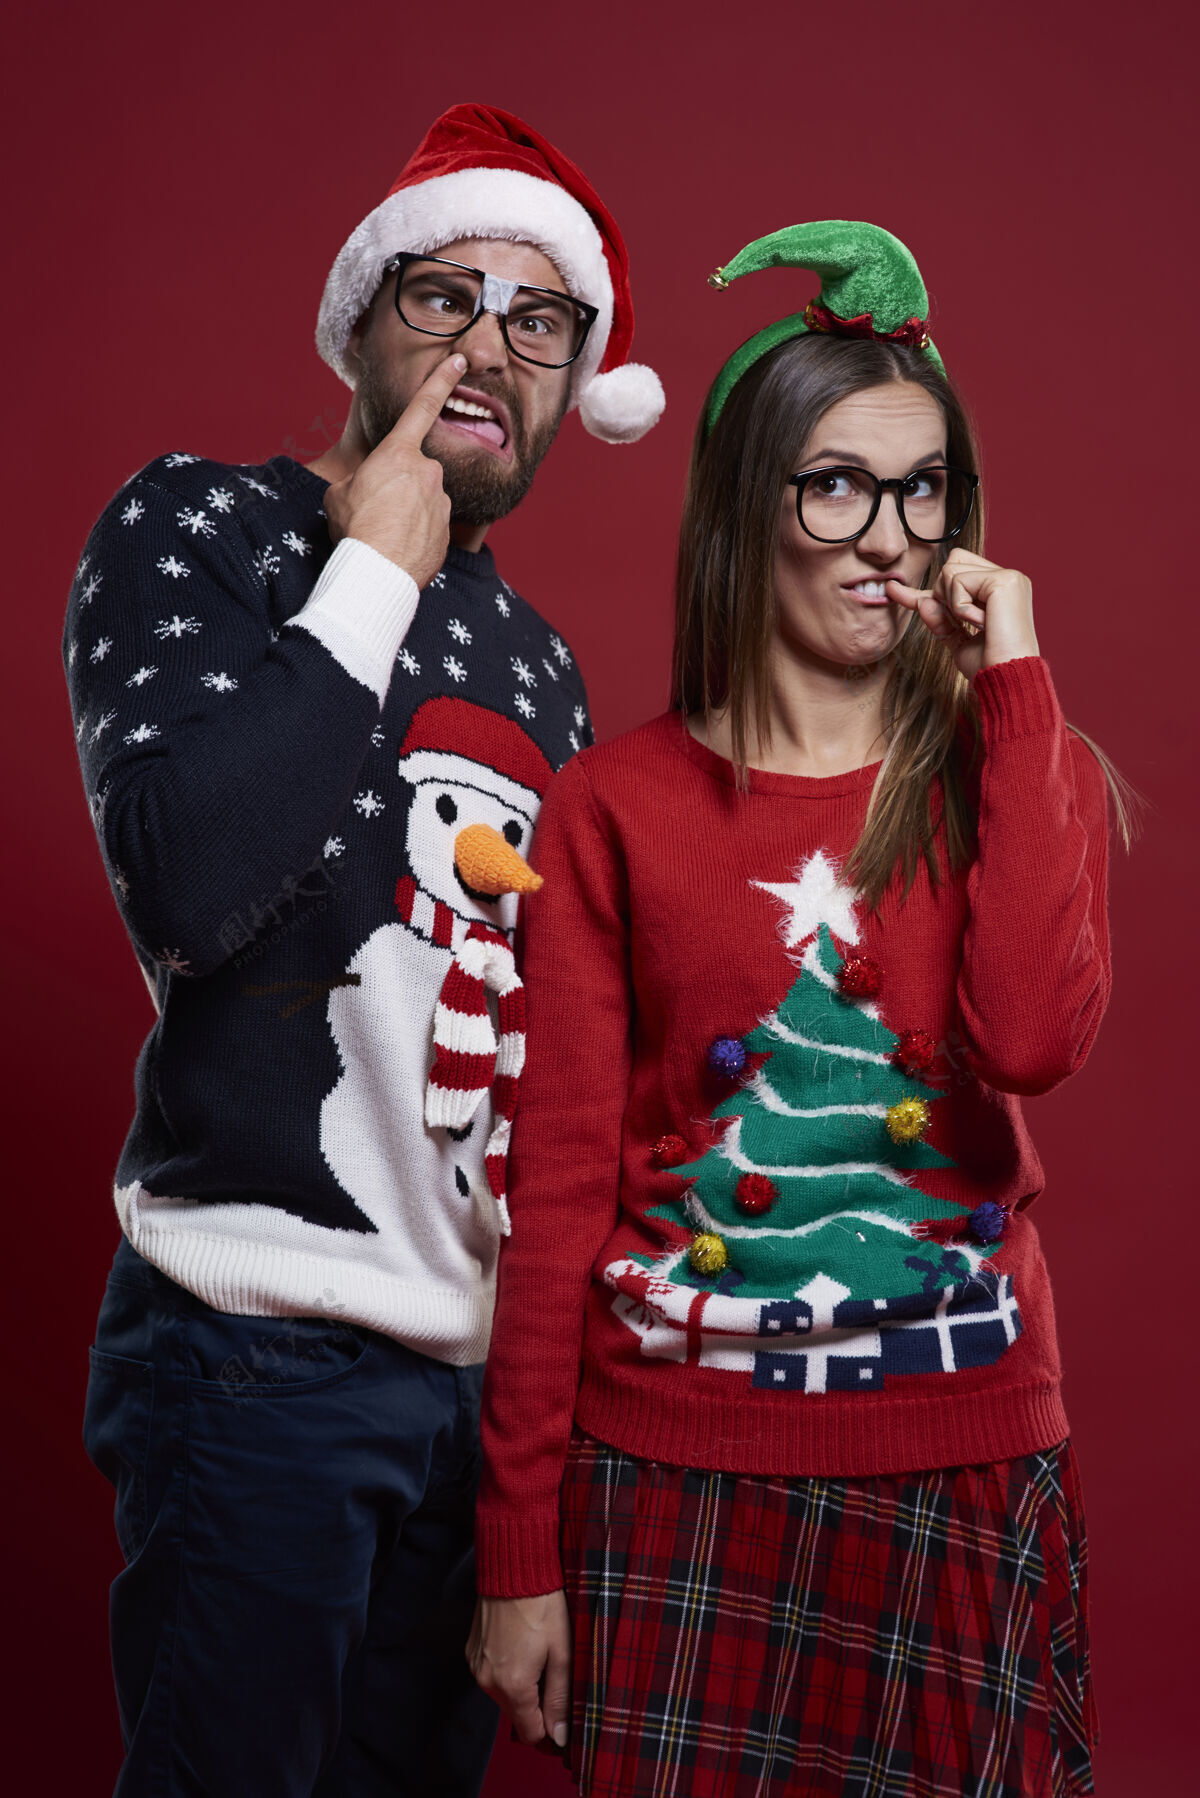 极客穿着奇怪圣诞服装的年轻夫妇女人手势书呆子